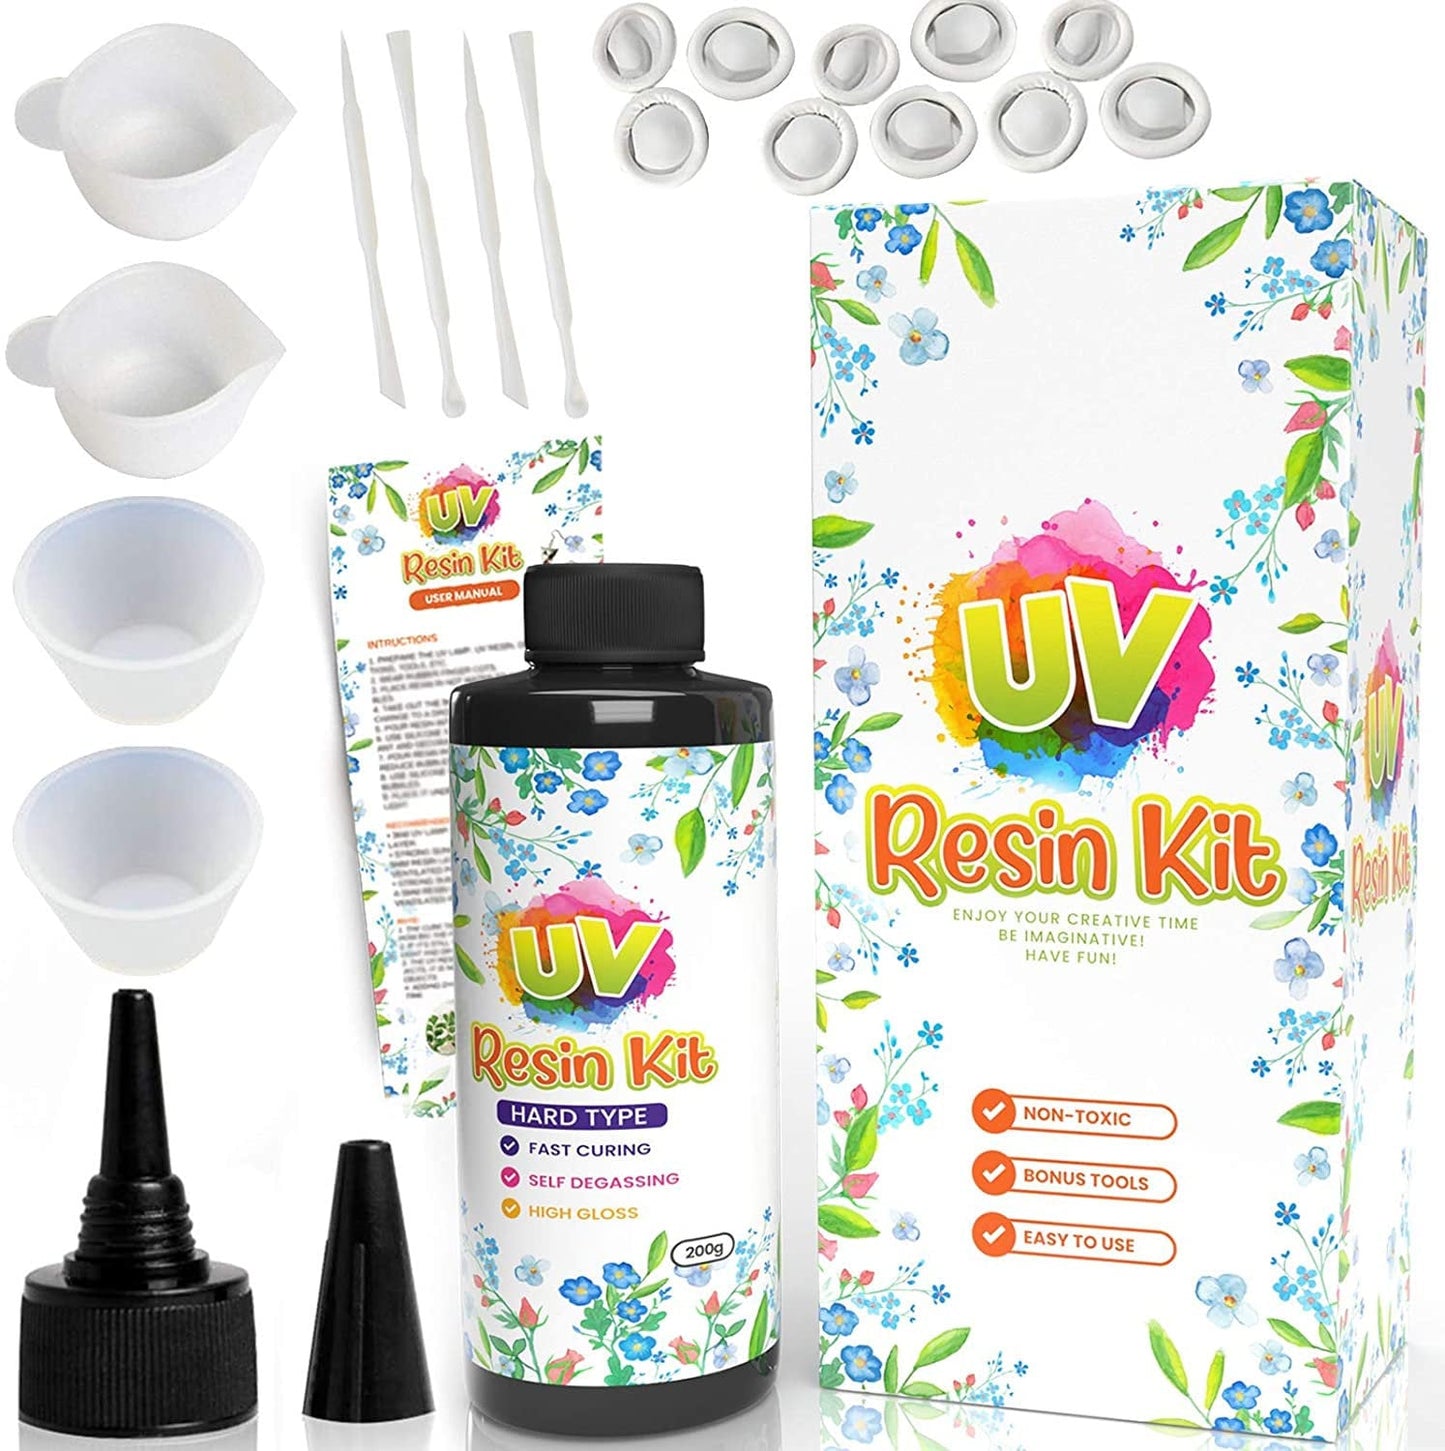 UV Resin Starter Kit with Light, UV Resin, UV Resin Dye, Resin Mold, Resin Supplies, and Glitter - Gifts for her